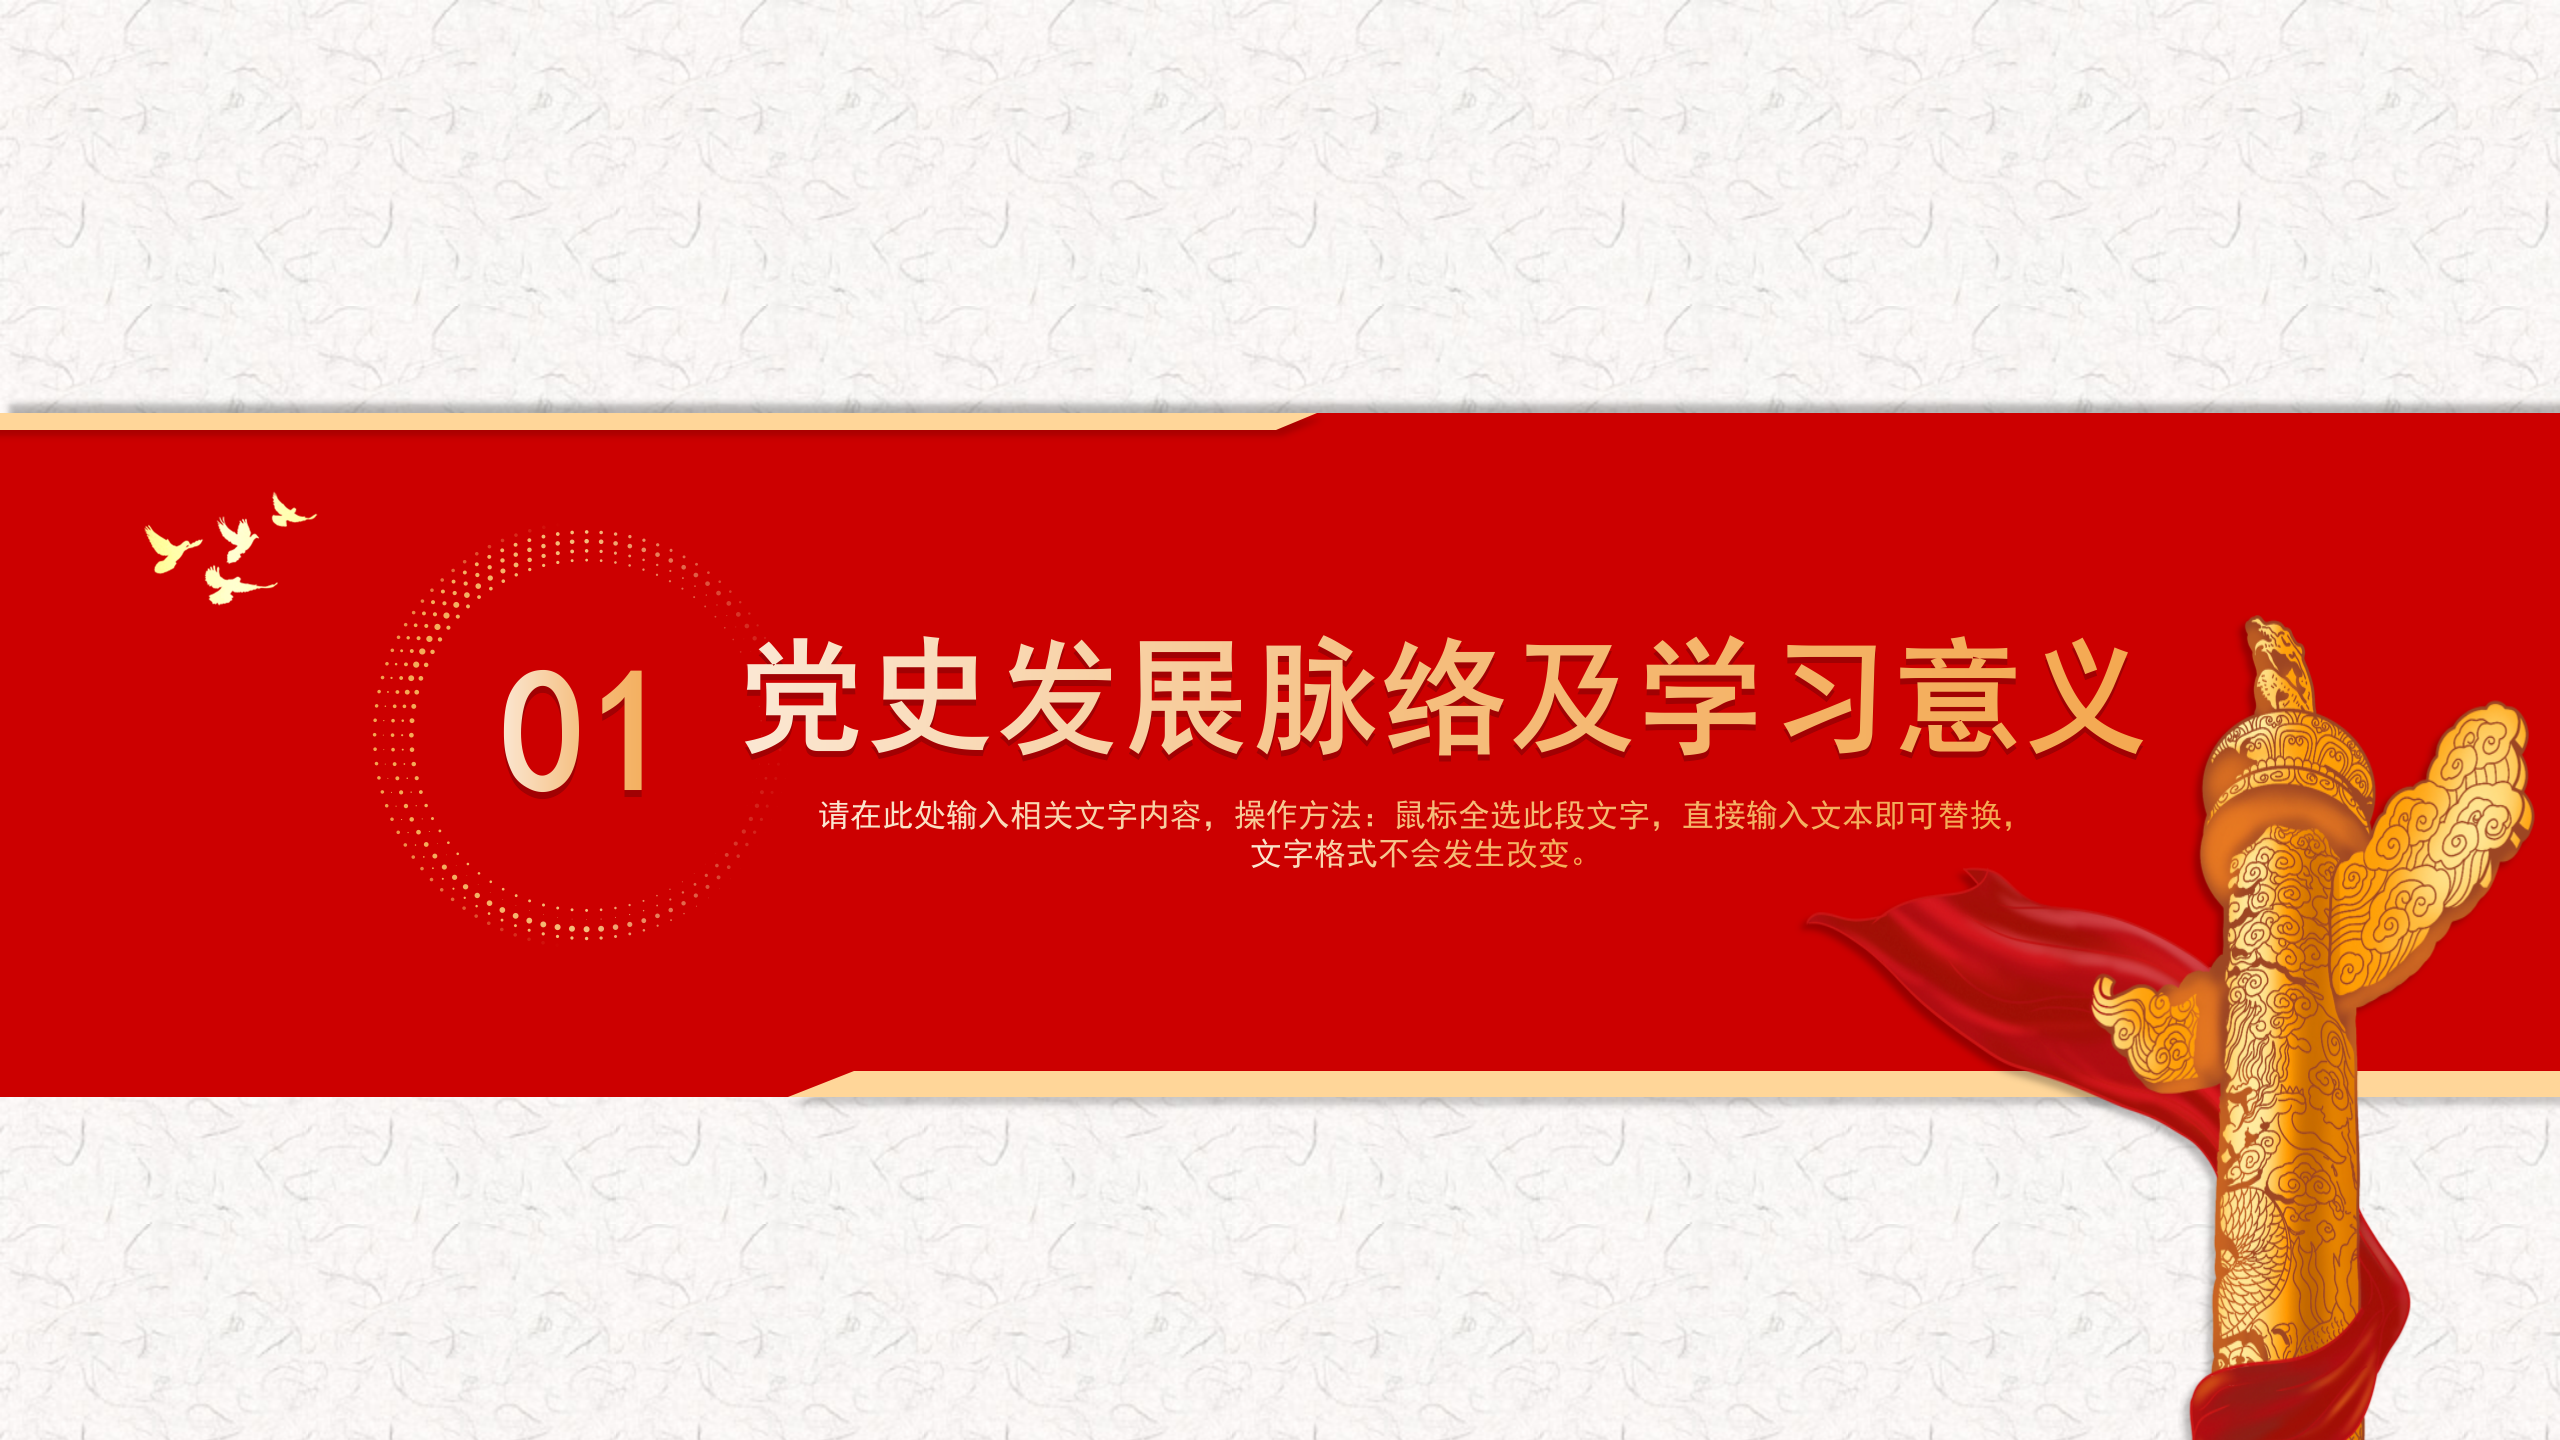 中国共产党党史及成就展示汇报ppt模板